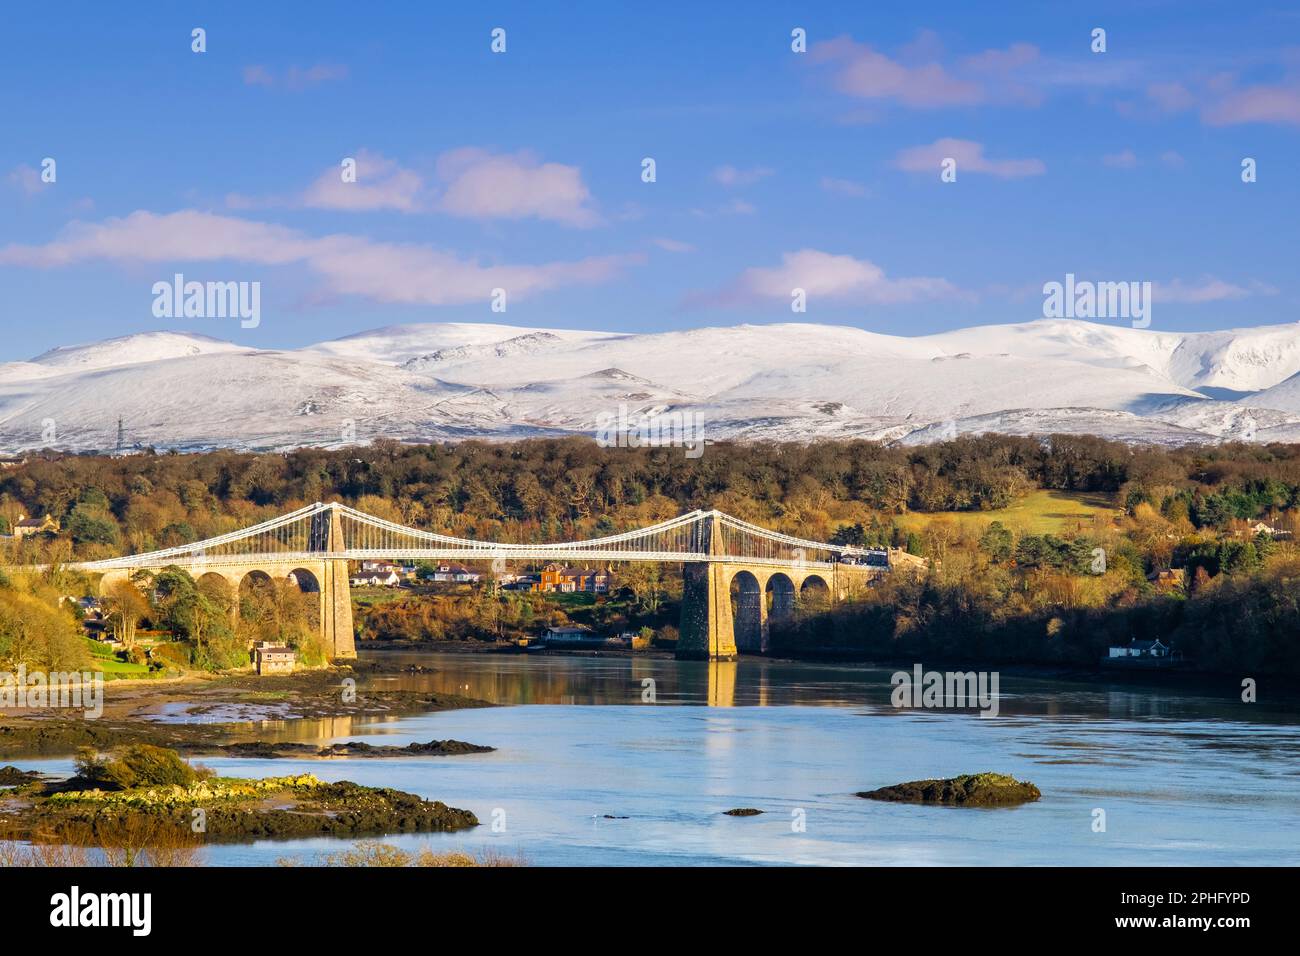 Malerischer Blick auf die Menai-Hängebrücke, die die Menai-Straße überquert, mit Schnee auf den Bergen im Winter. Menai Bridge, Isle of Anglesey, Wales, Vereinigtes Königreich Stockfoto